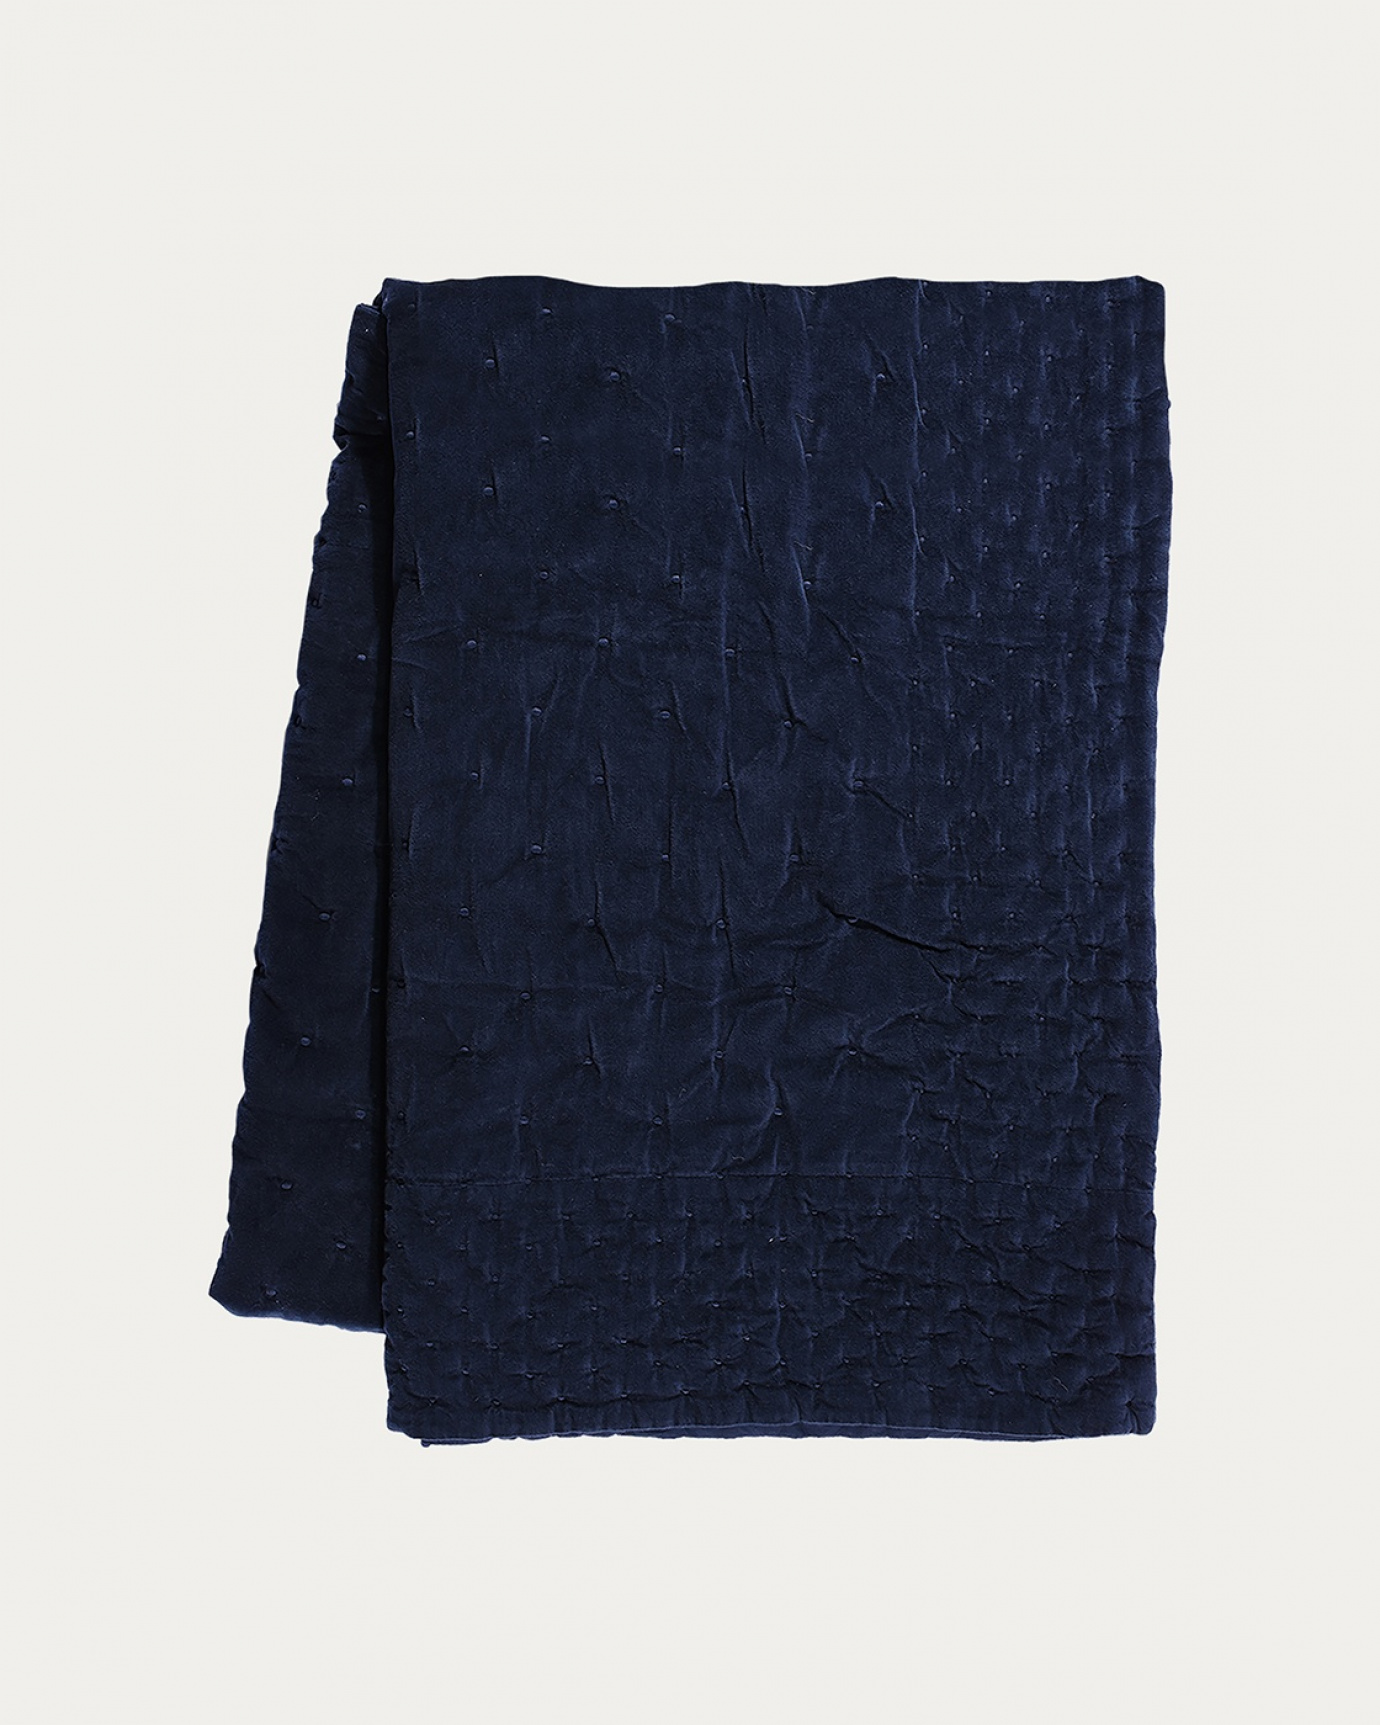 Produktbild bläckblå PAOLO överkast av mjuk bomullssammet för dubbelsäng från LINUM DESIGN. Storlek 270x260 cm.